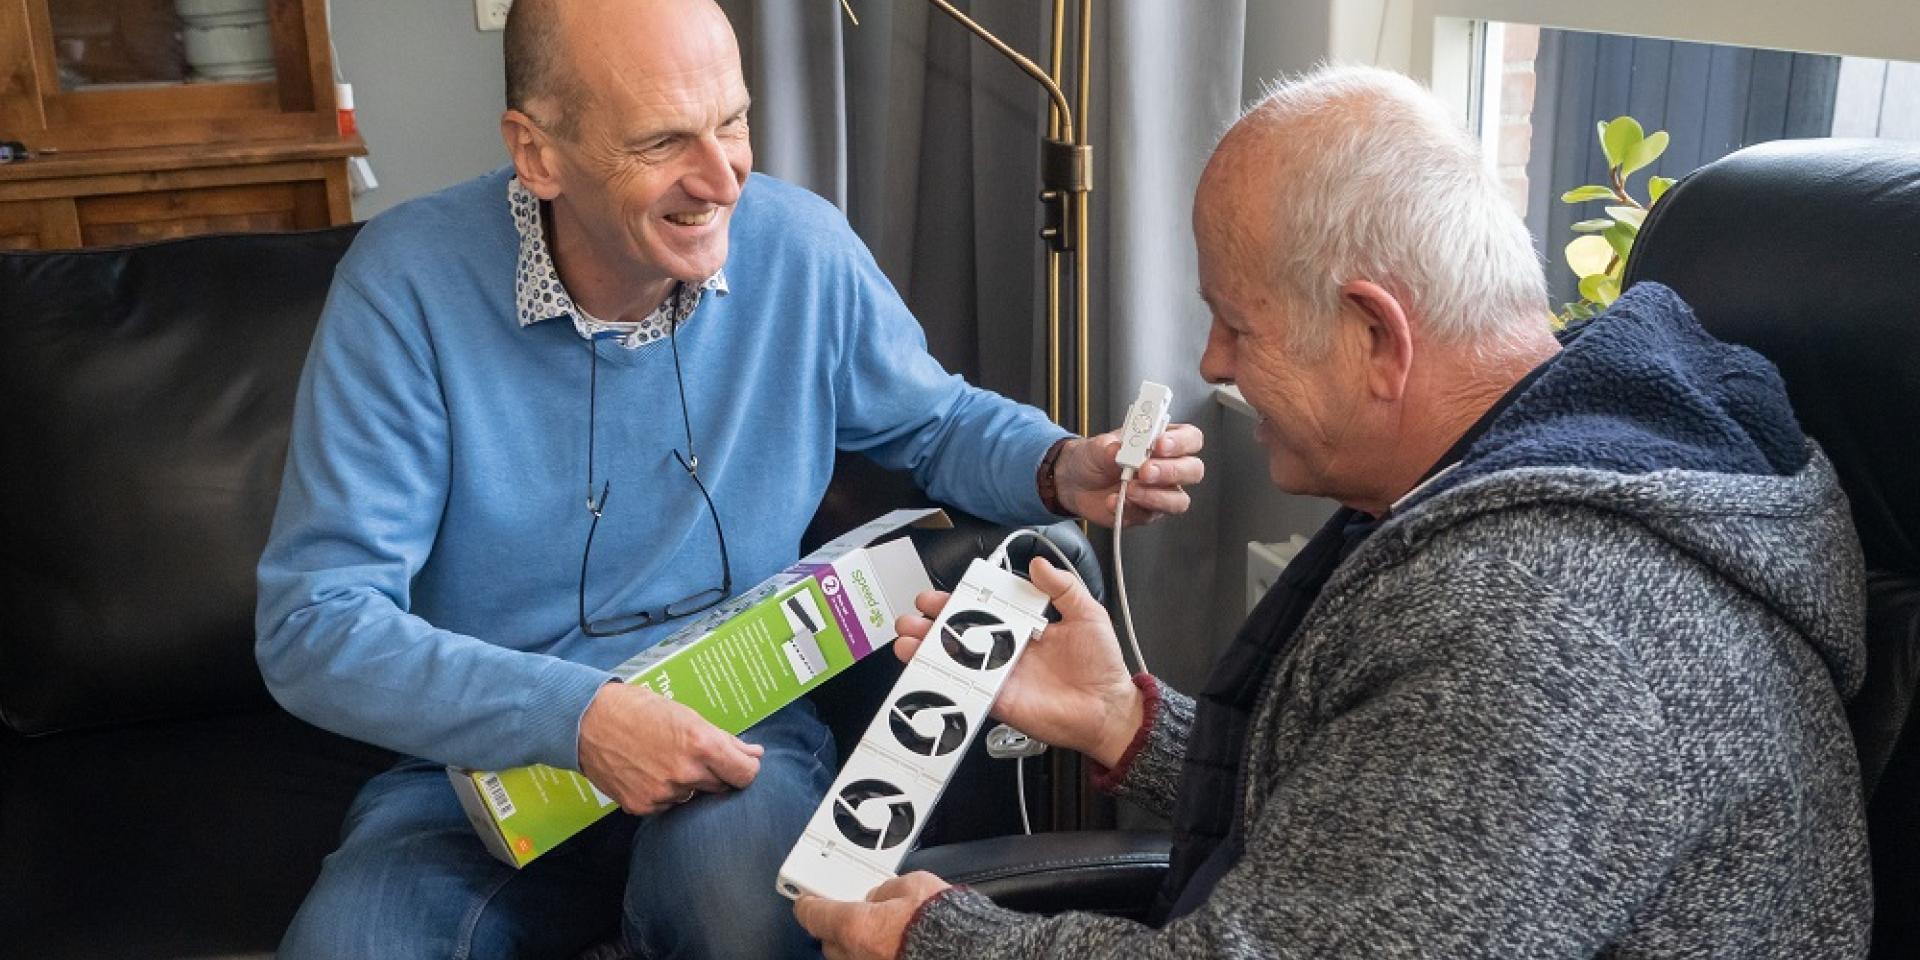 Energiecoach Aarnoud van der Deijl laat een radiatorventilator zien aan een oudere man bij wie hij op huisbezoek is.